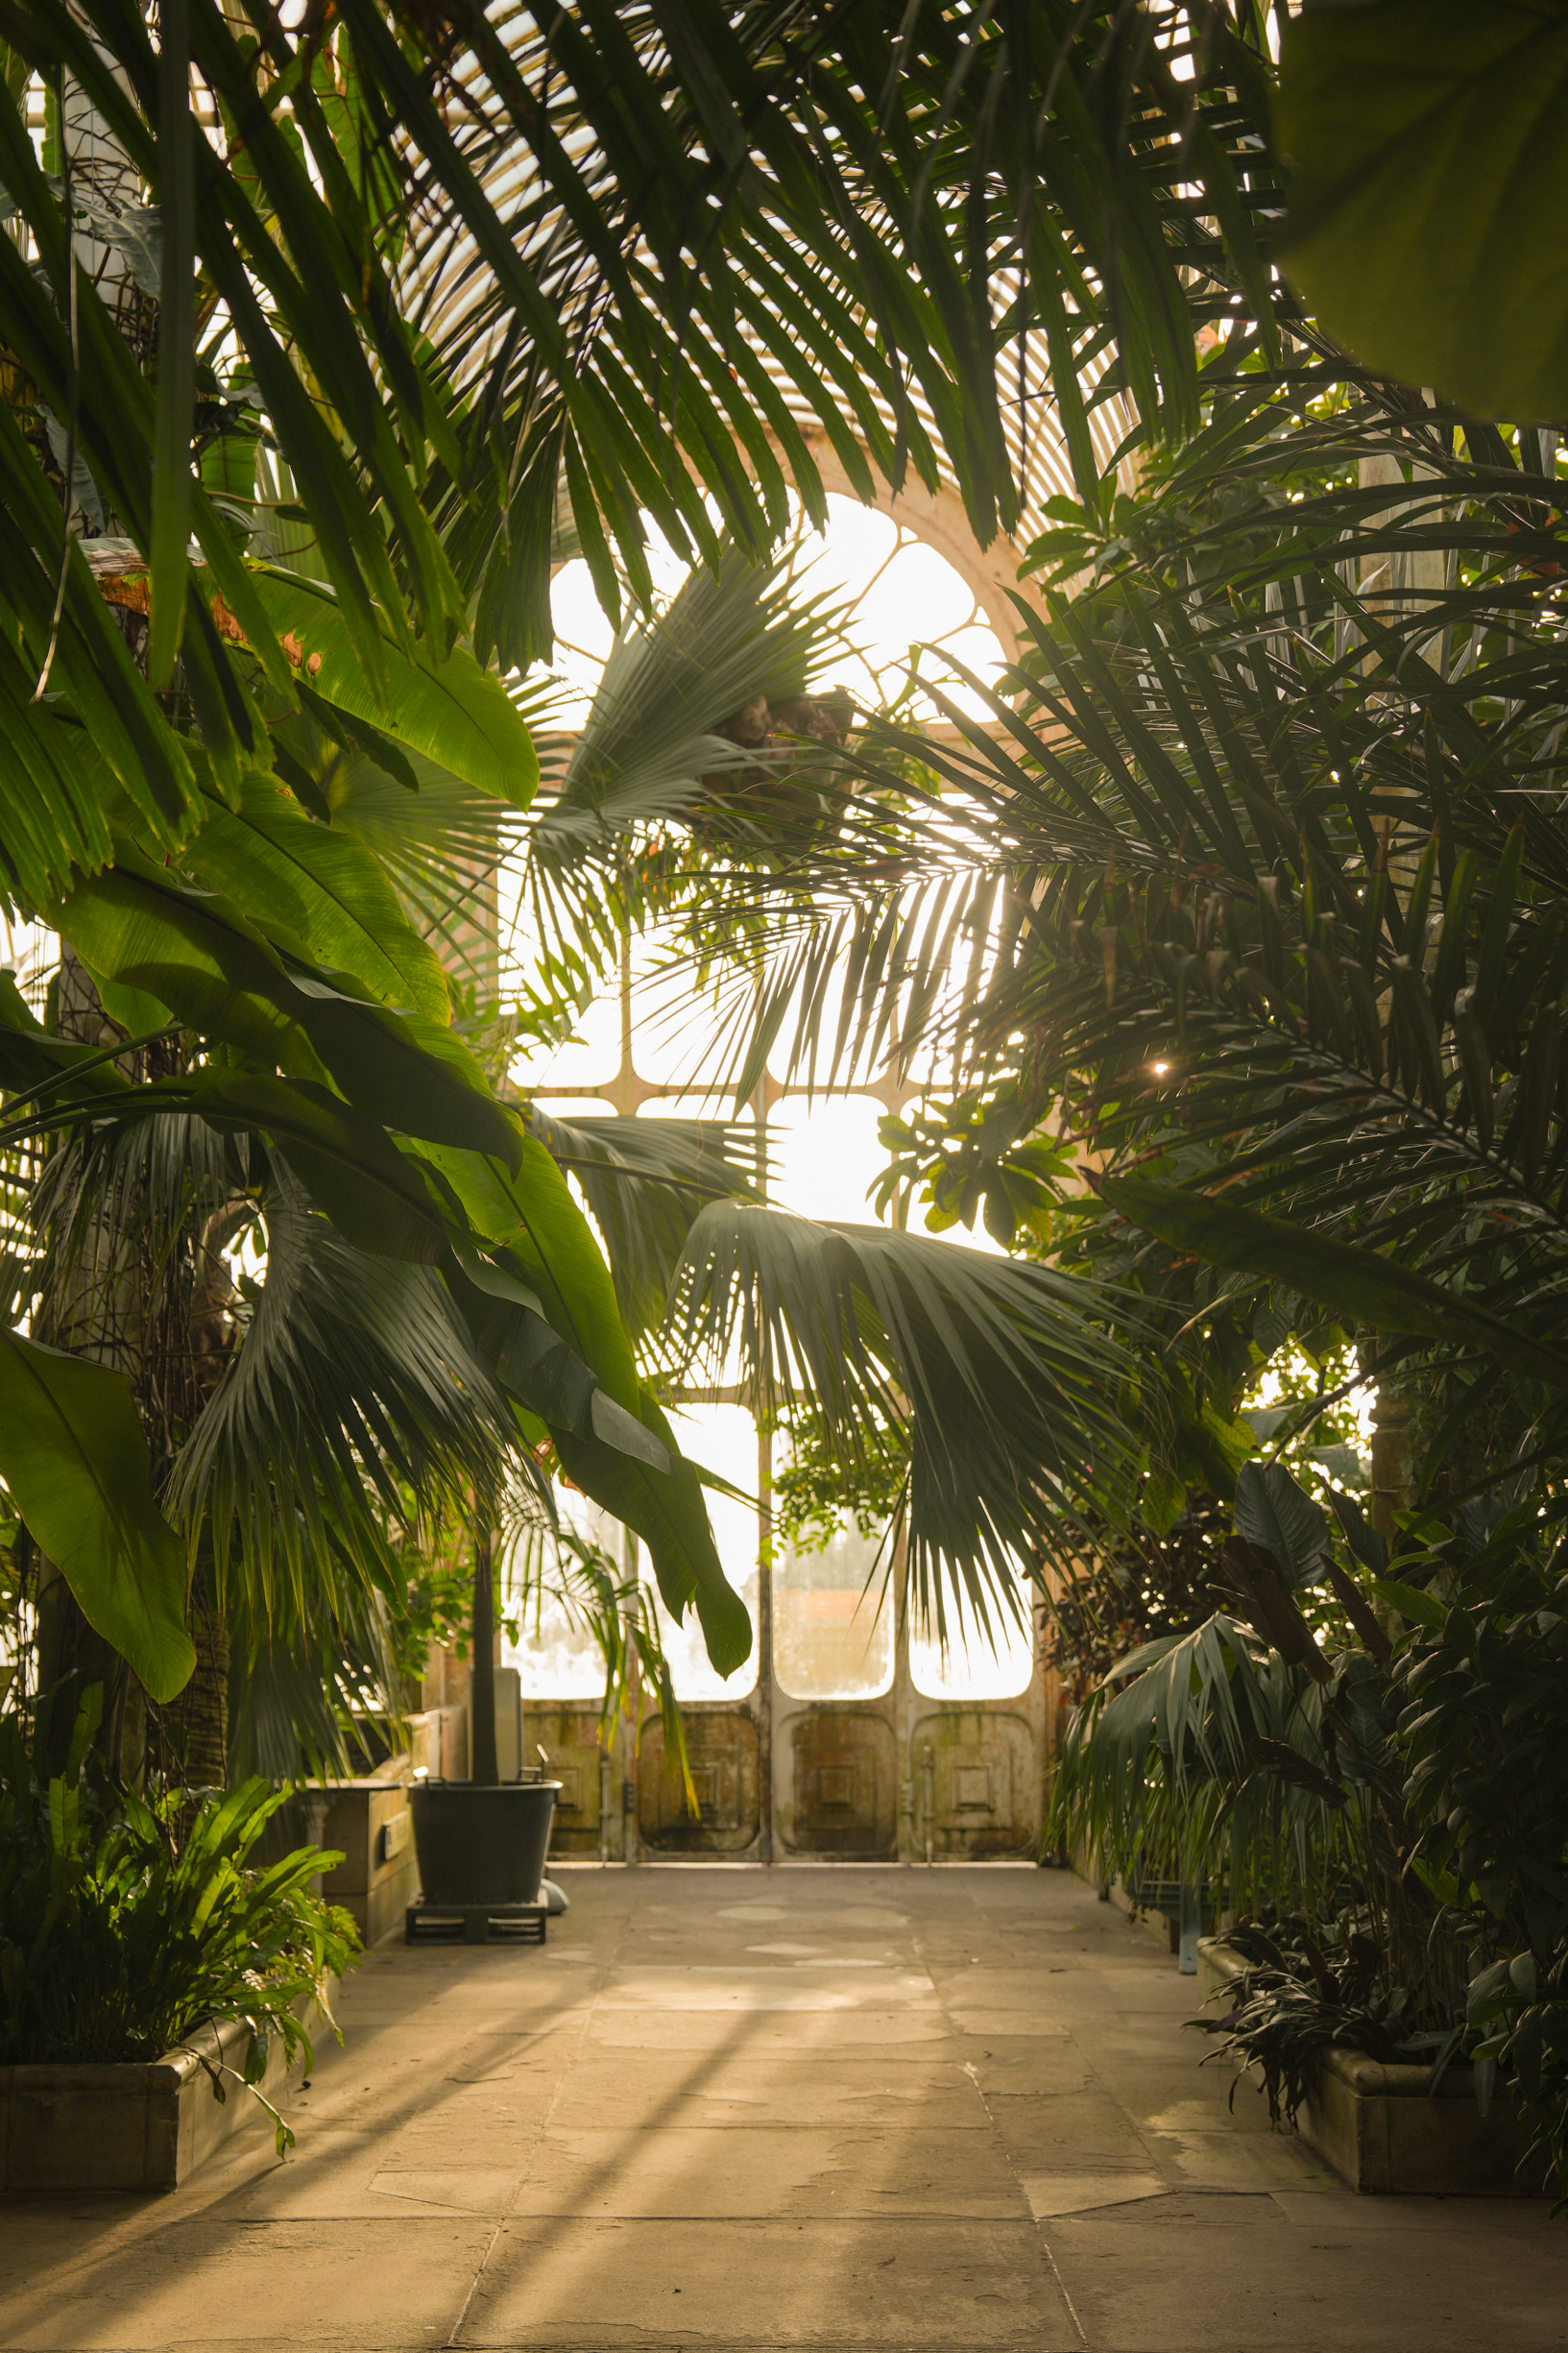 英国皇家植物园Kew Garden 邱园 温室里照进一束光